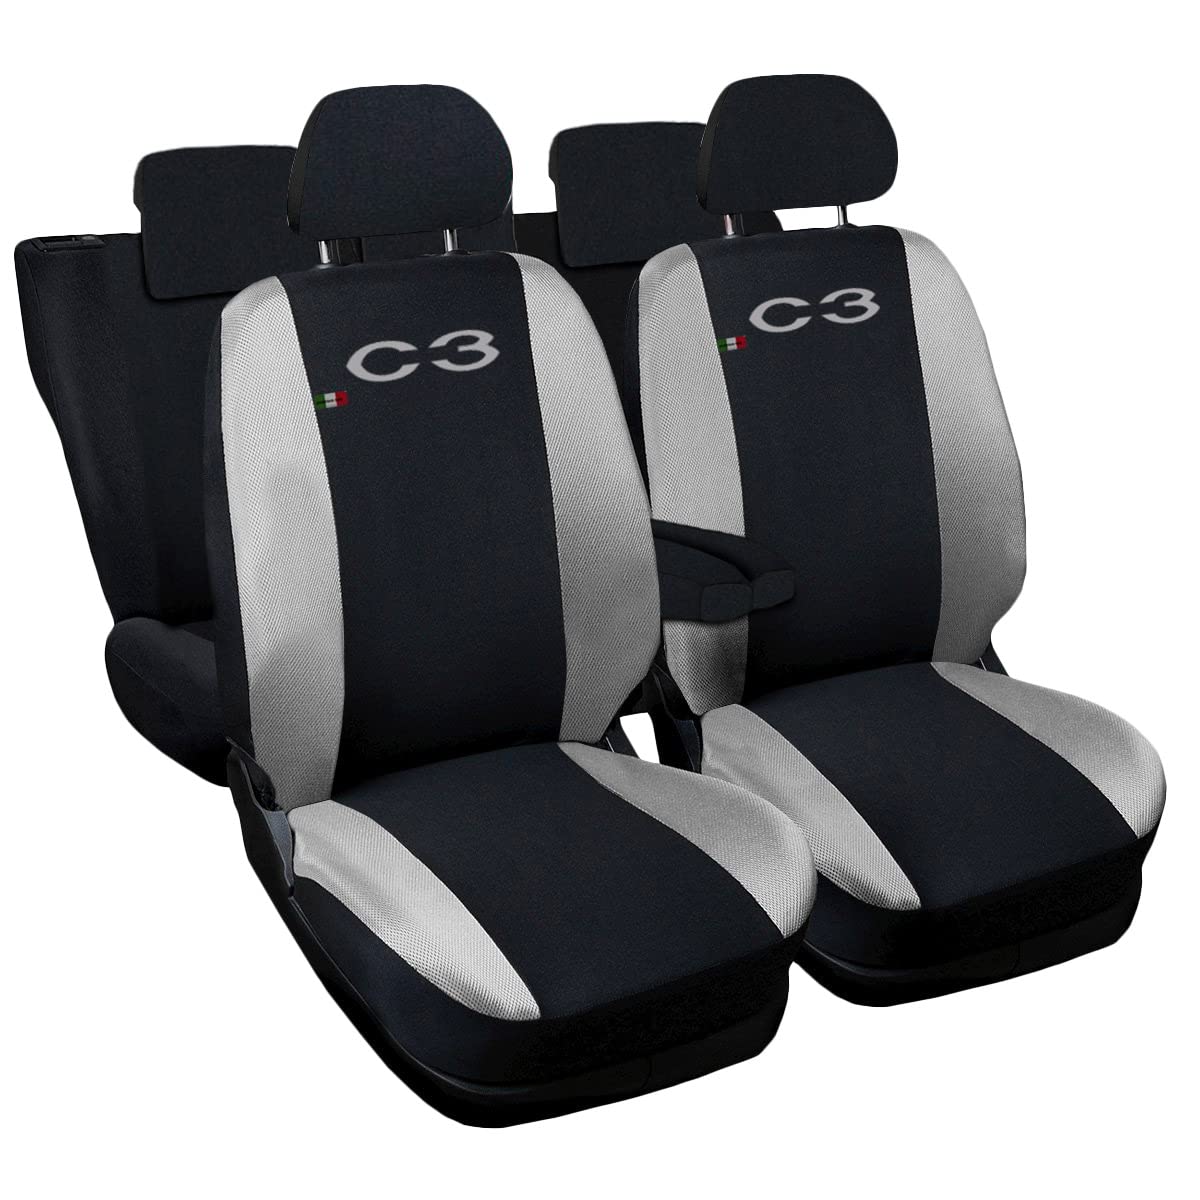 Auto Accessori Lupex Autositzbezüge kompatibel C3 | Made in Italy | Set Vordersitze und Armlehne | gesticktes Logo | Airbag kompatibel | Innen (schwarz/hellgrau) von Auto Accessori Lupex